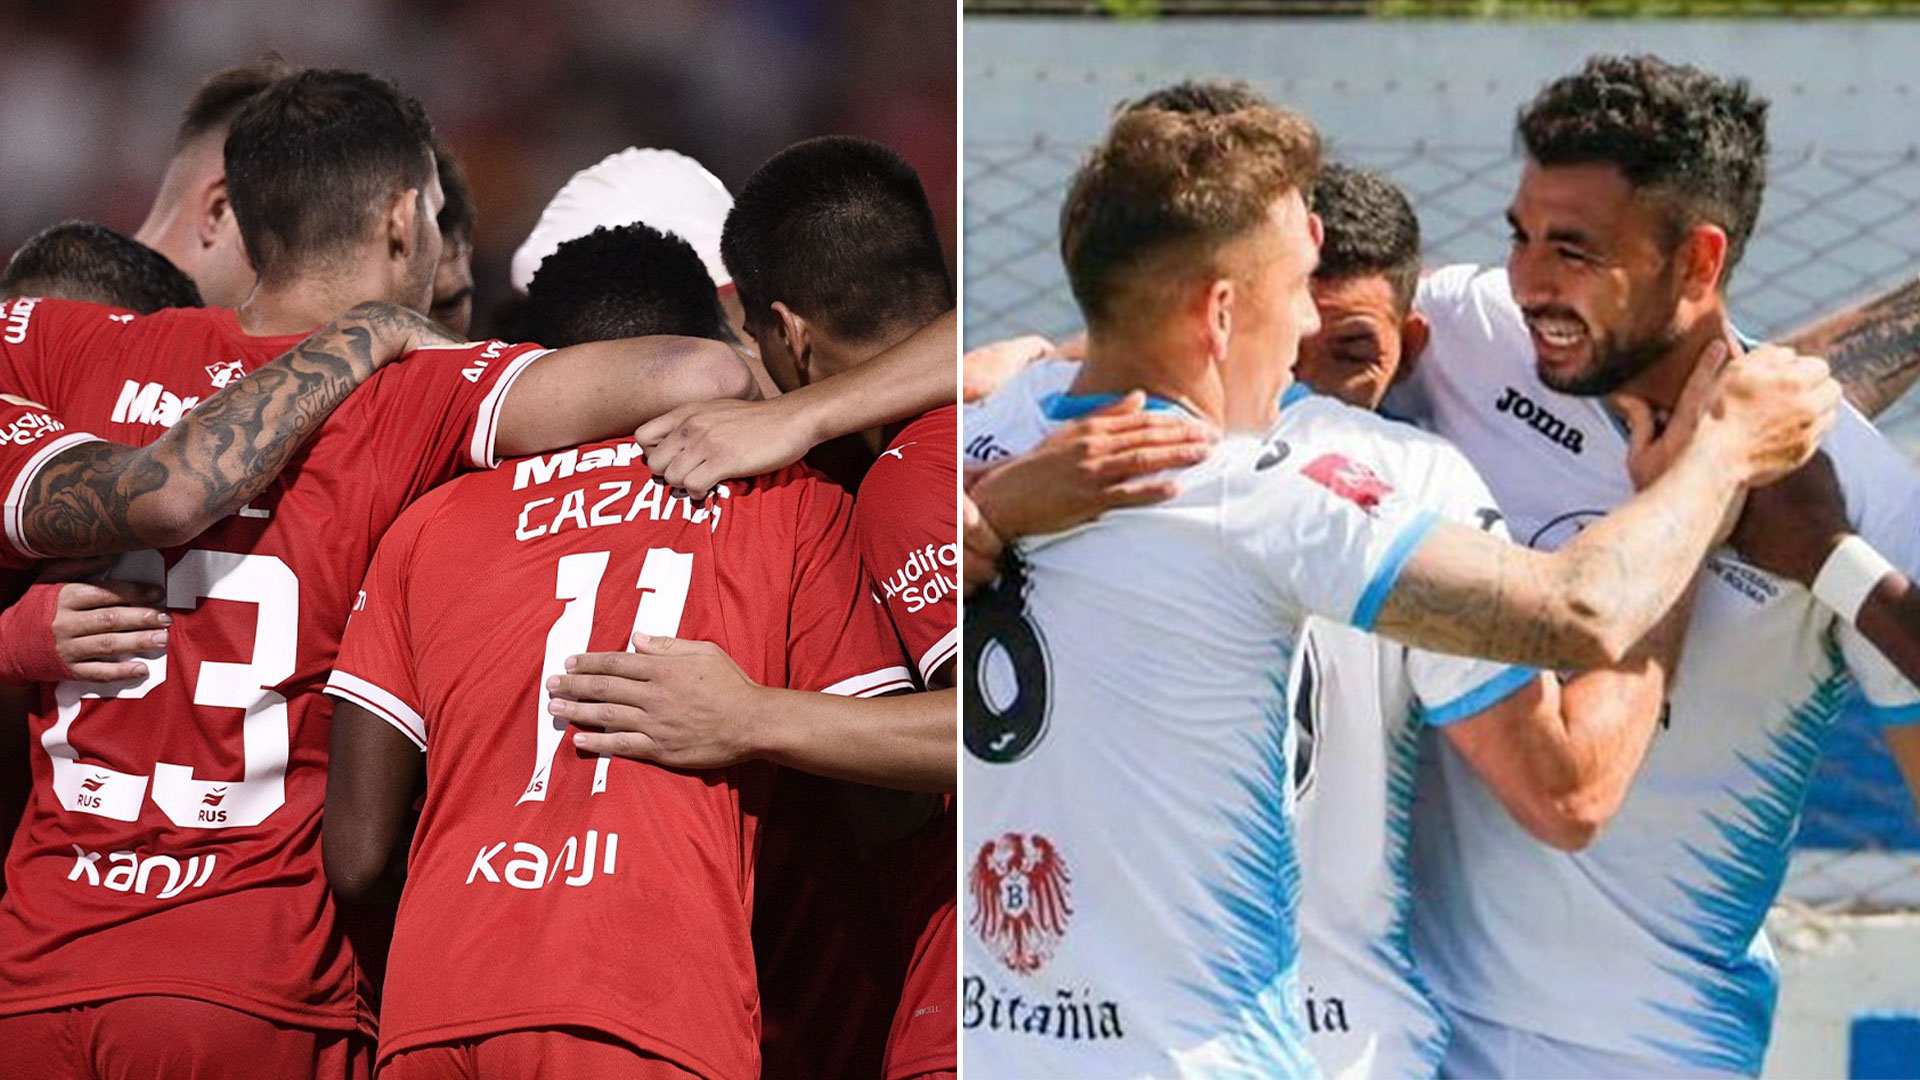 Independiente le gana 1-0 a Ciudad de Bolívar en su debut en la Copa Argentina